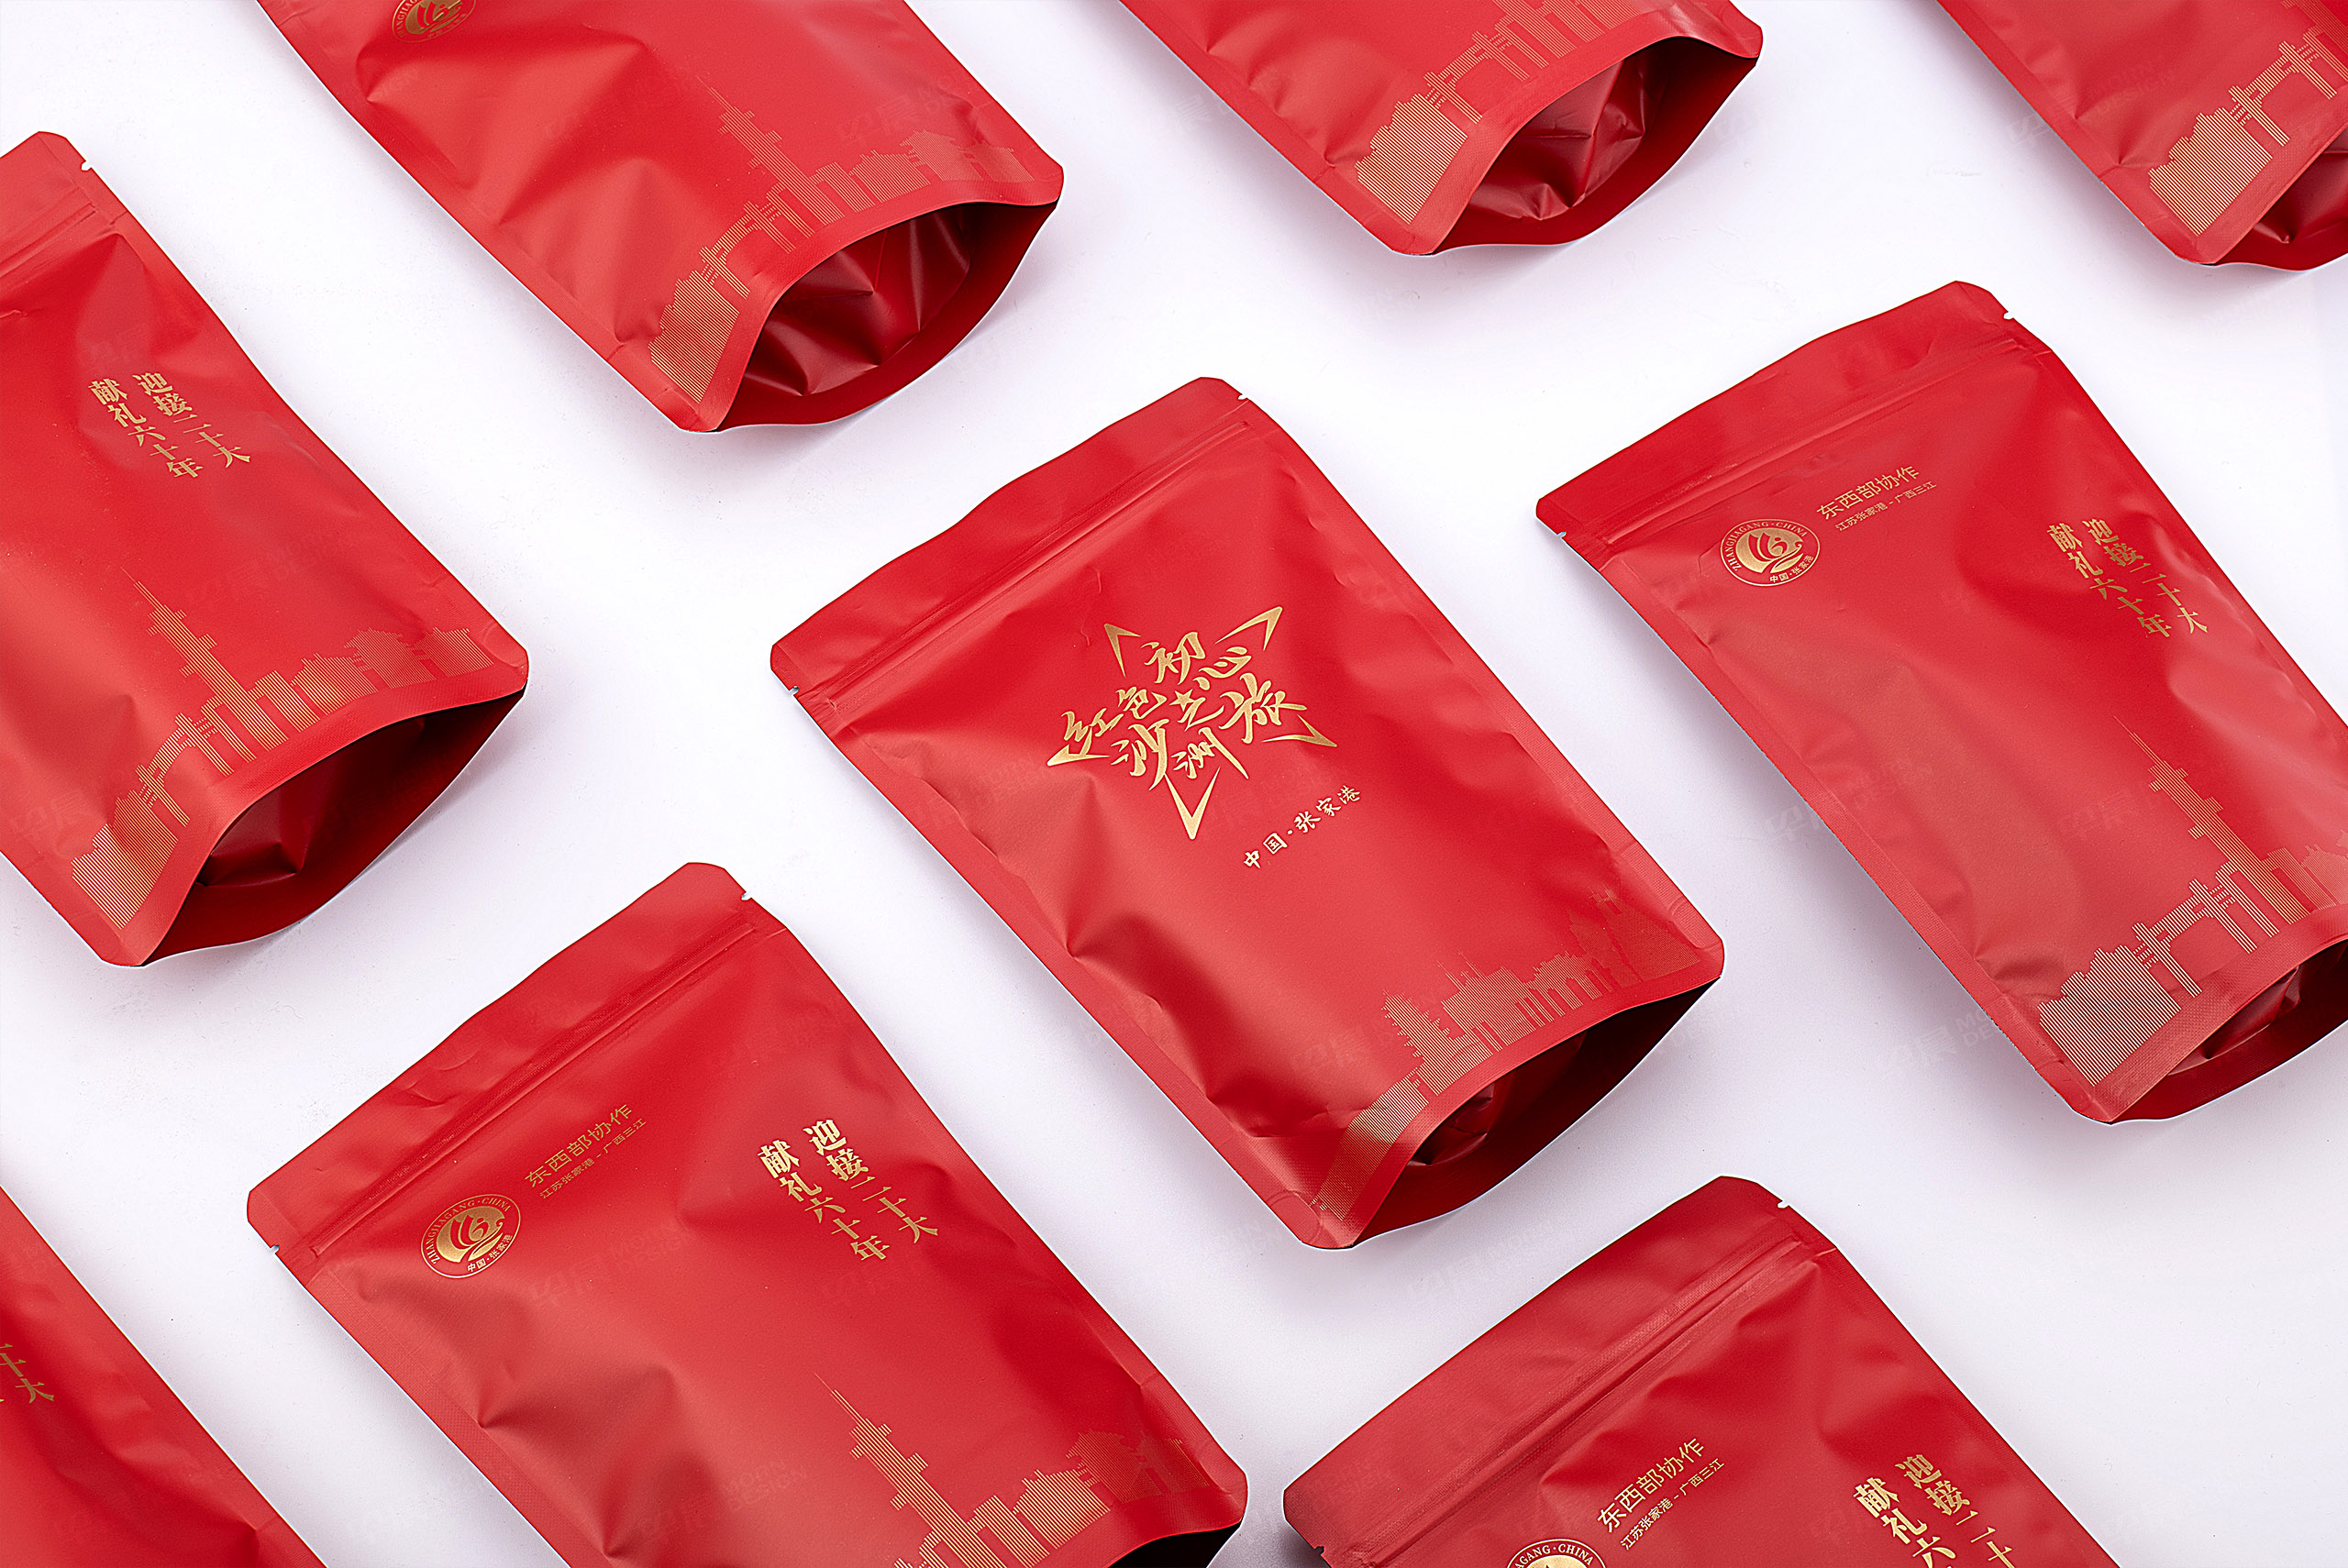 玫瑰花茶文创品牌包装设计-红色沙洲初心之旅-kok登录入口-官方网站
设计包装设计作品